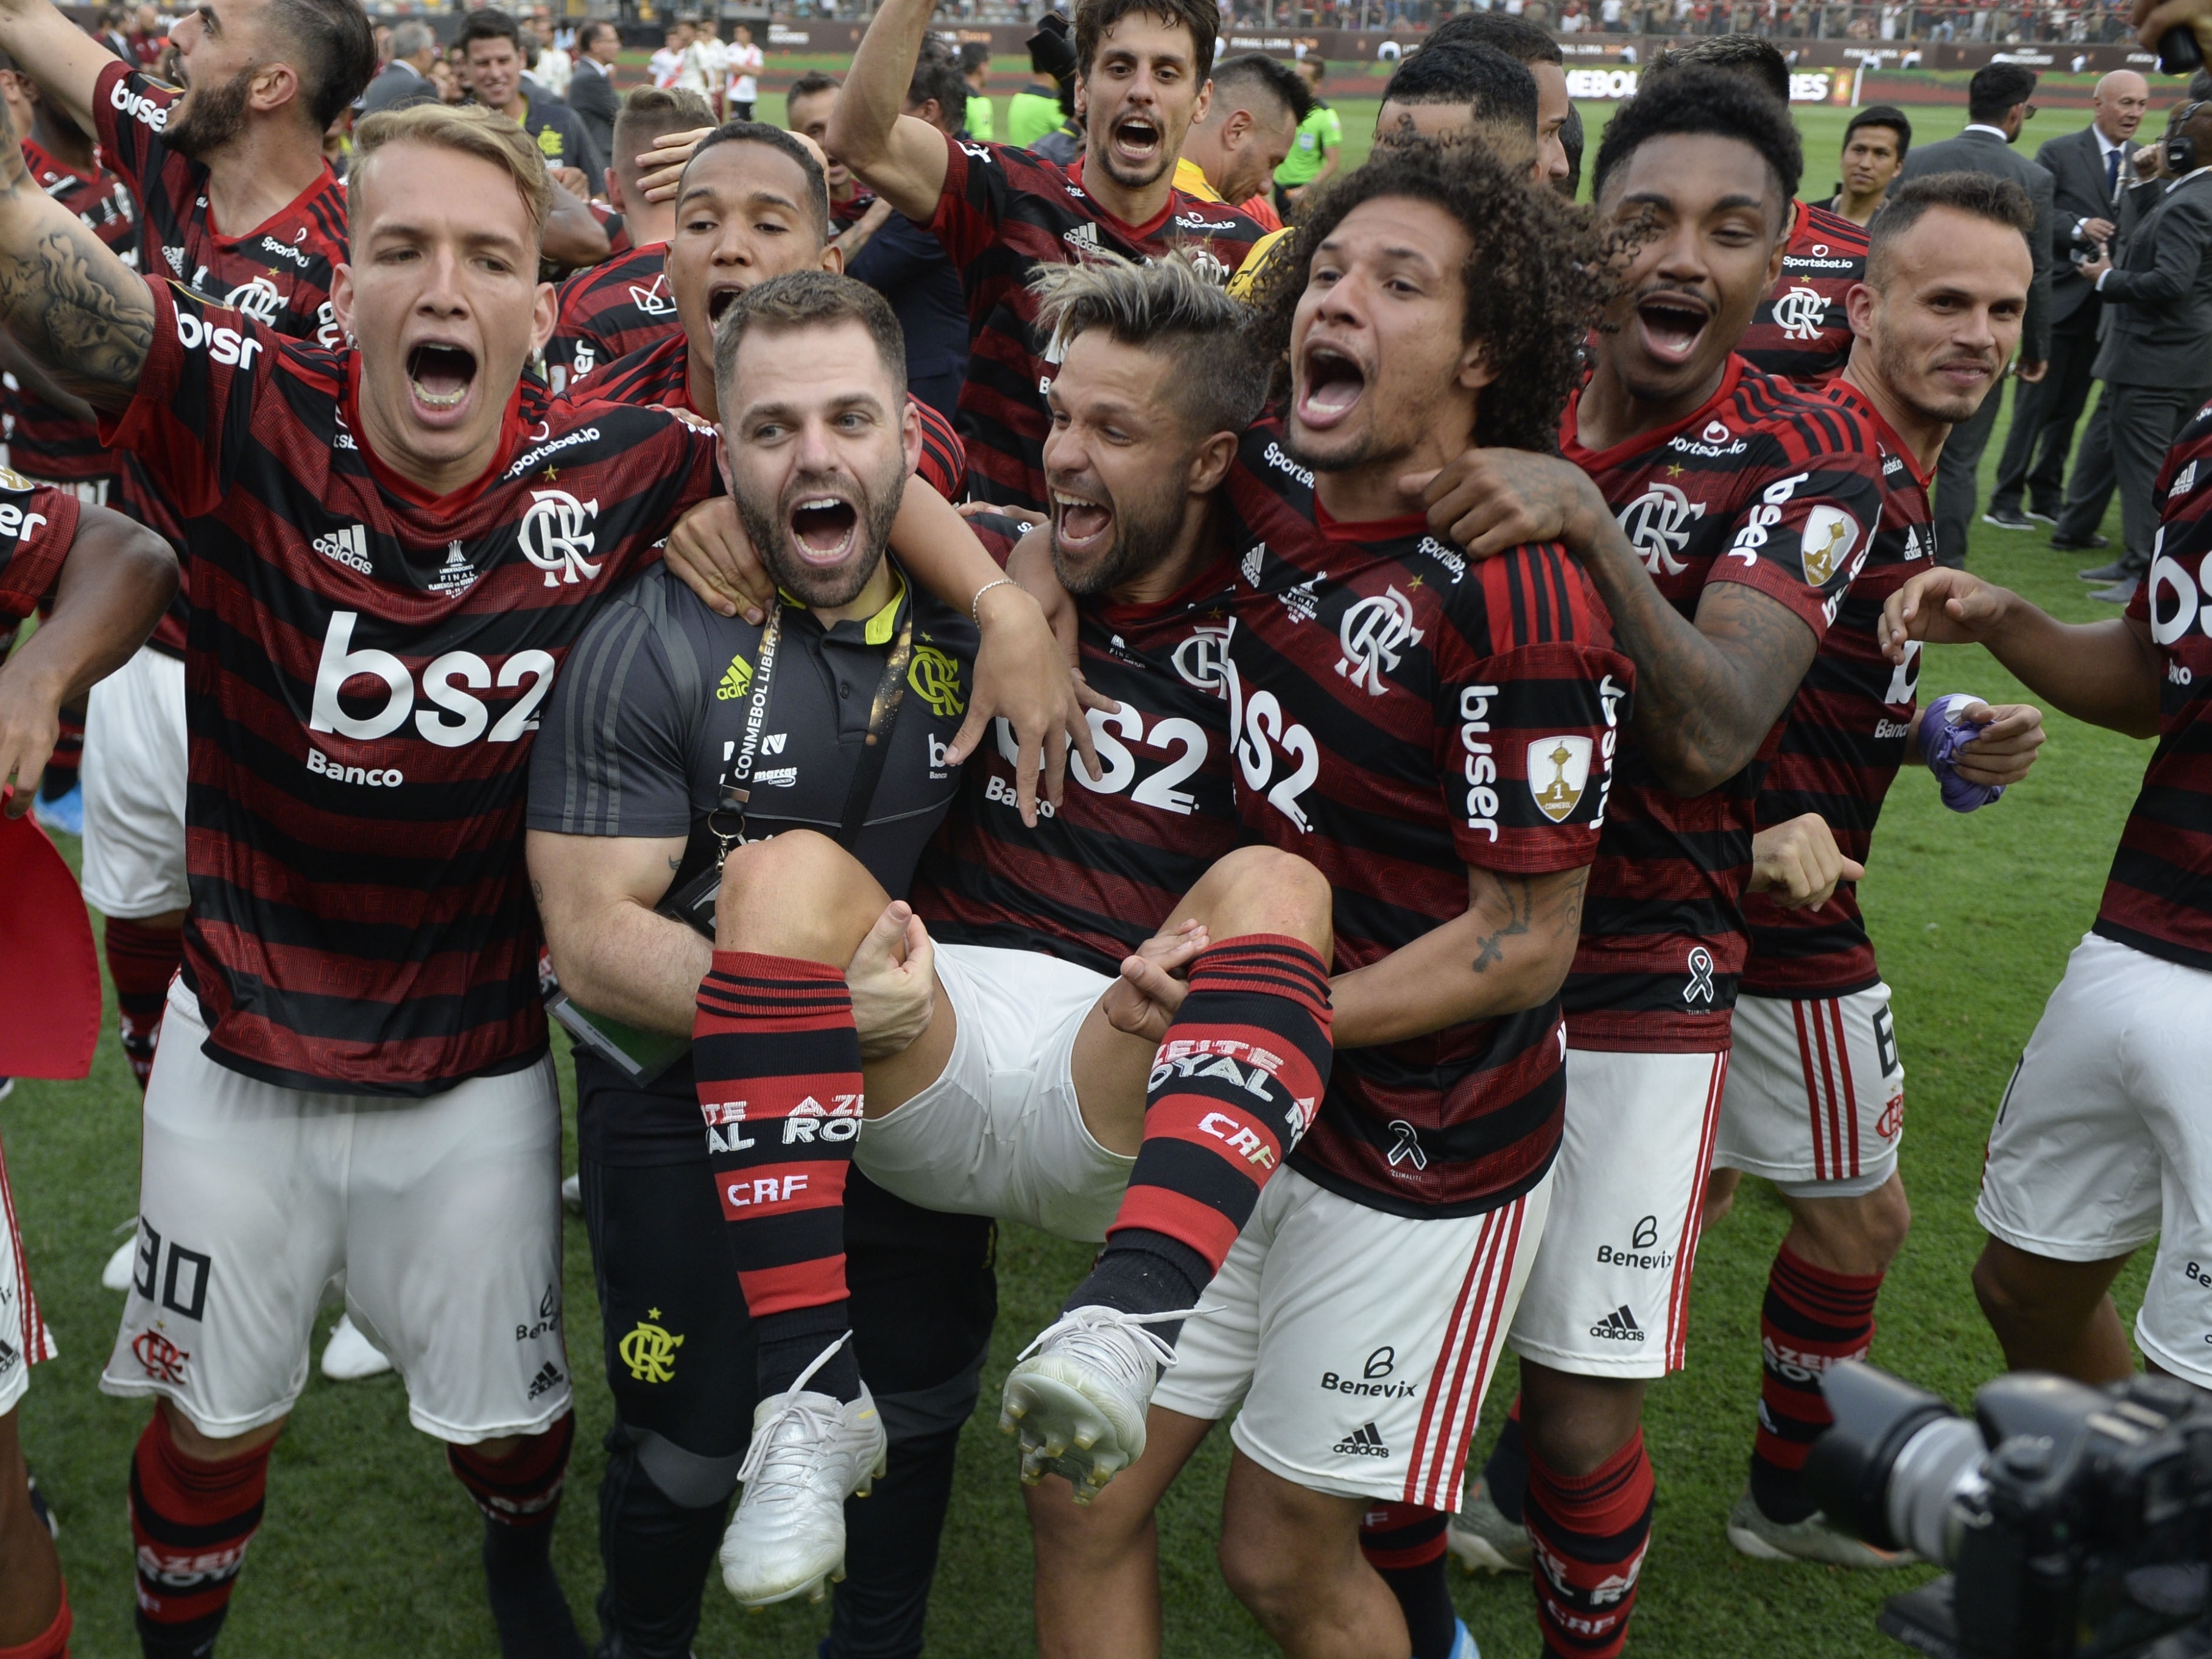 Sufoco e comemoração: veja os memes da classificação do Flamengo